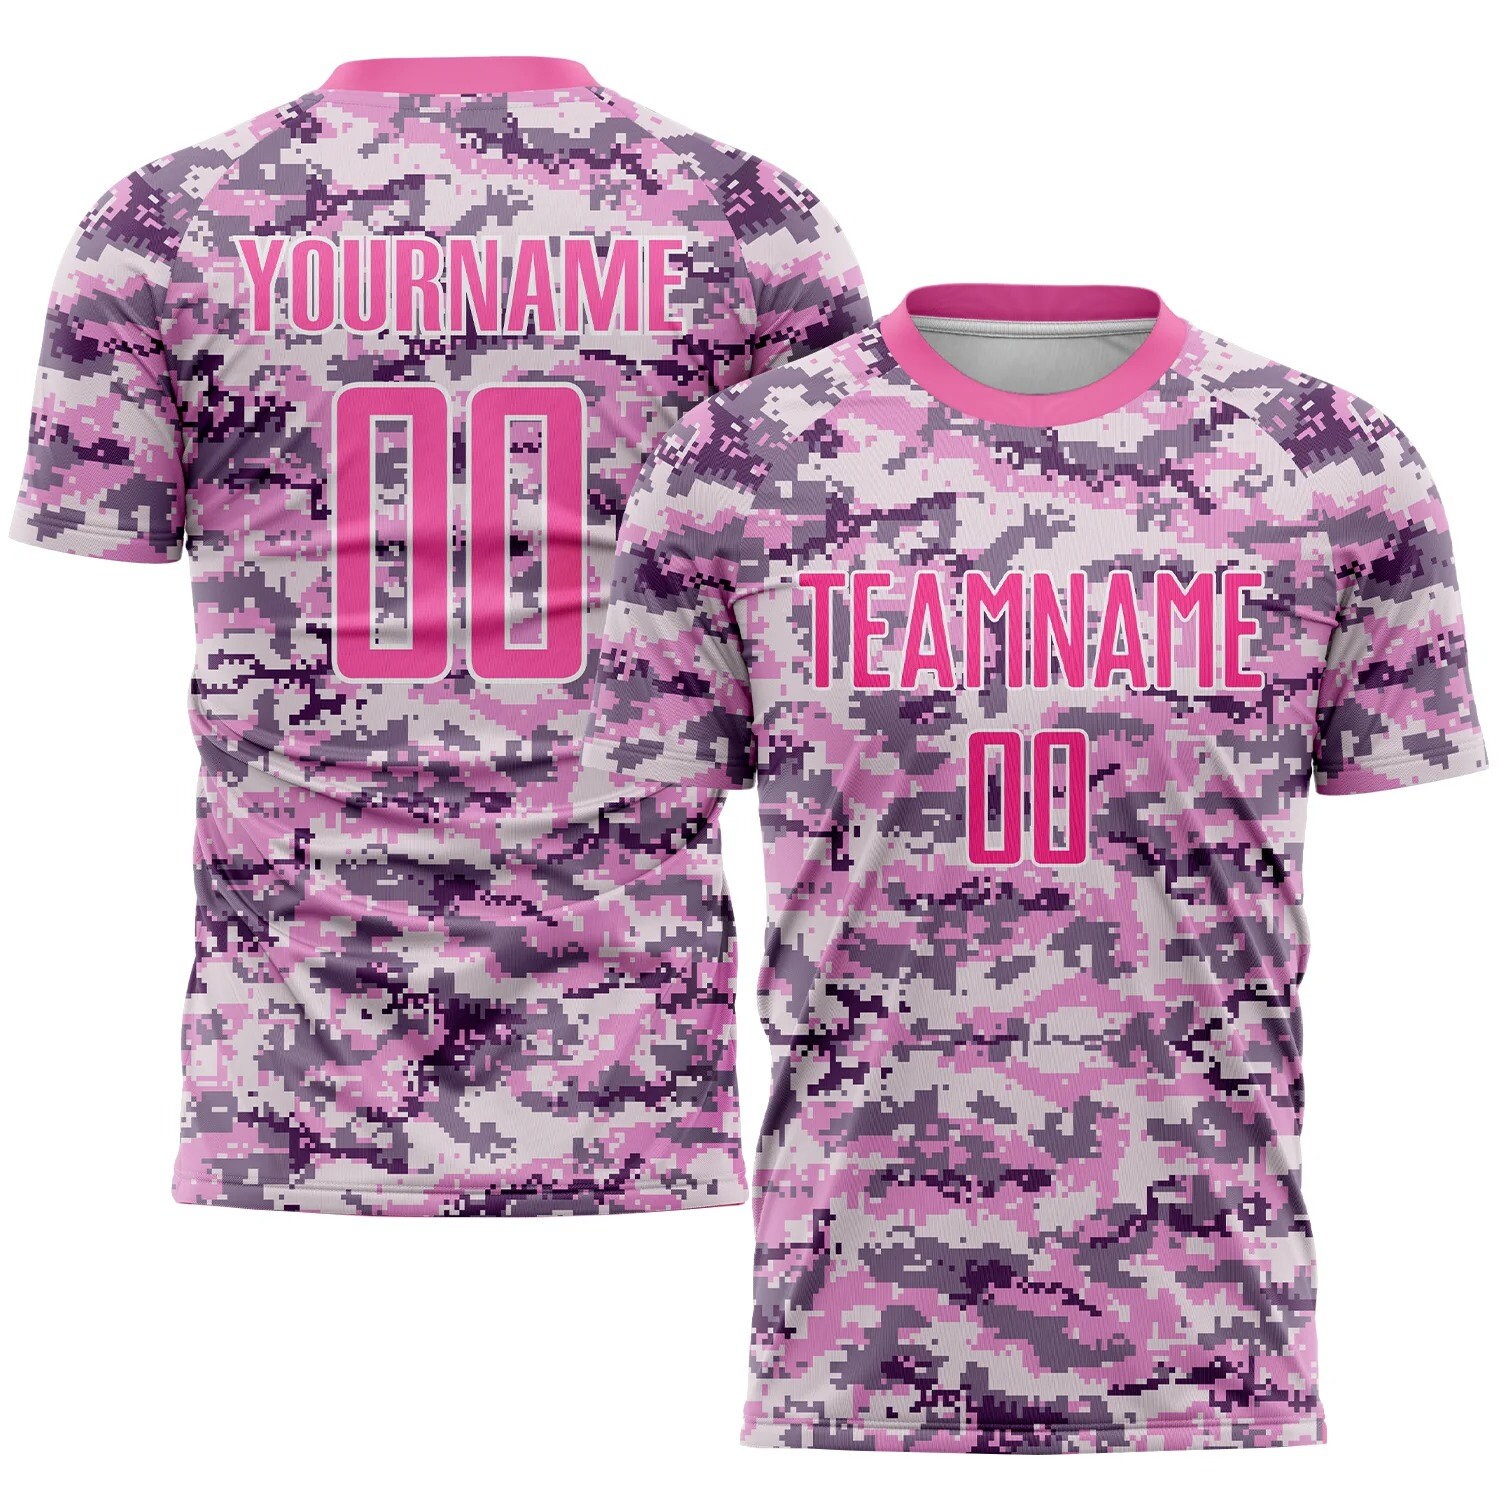 Discover Conjunto de Fútbol Personalizados Uniforme Camo Rosa, Camisetas Personalizadas con Logotipo del Equipo del Número y Nombre